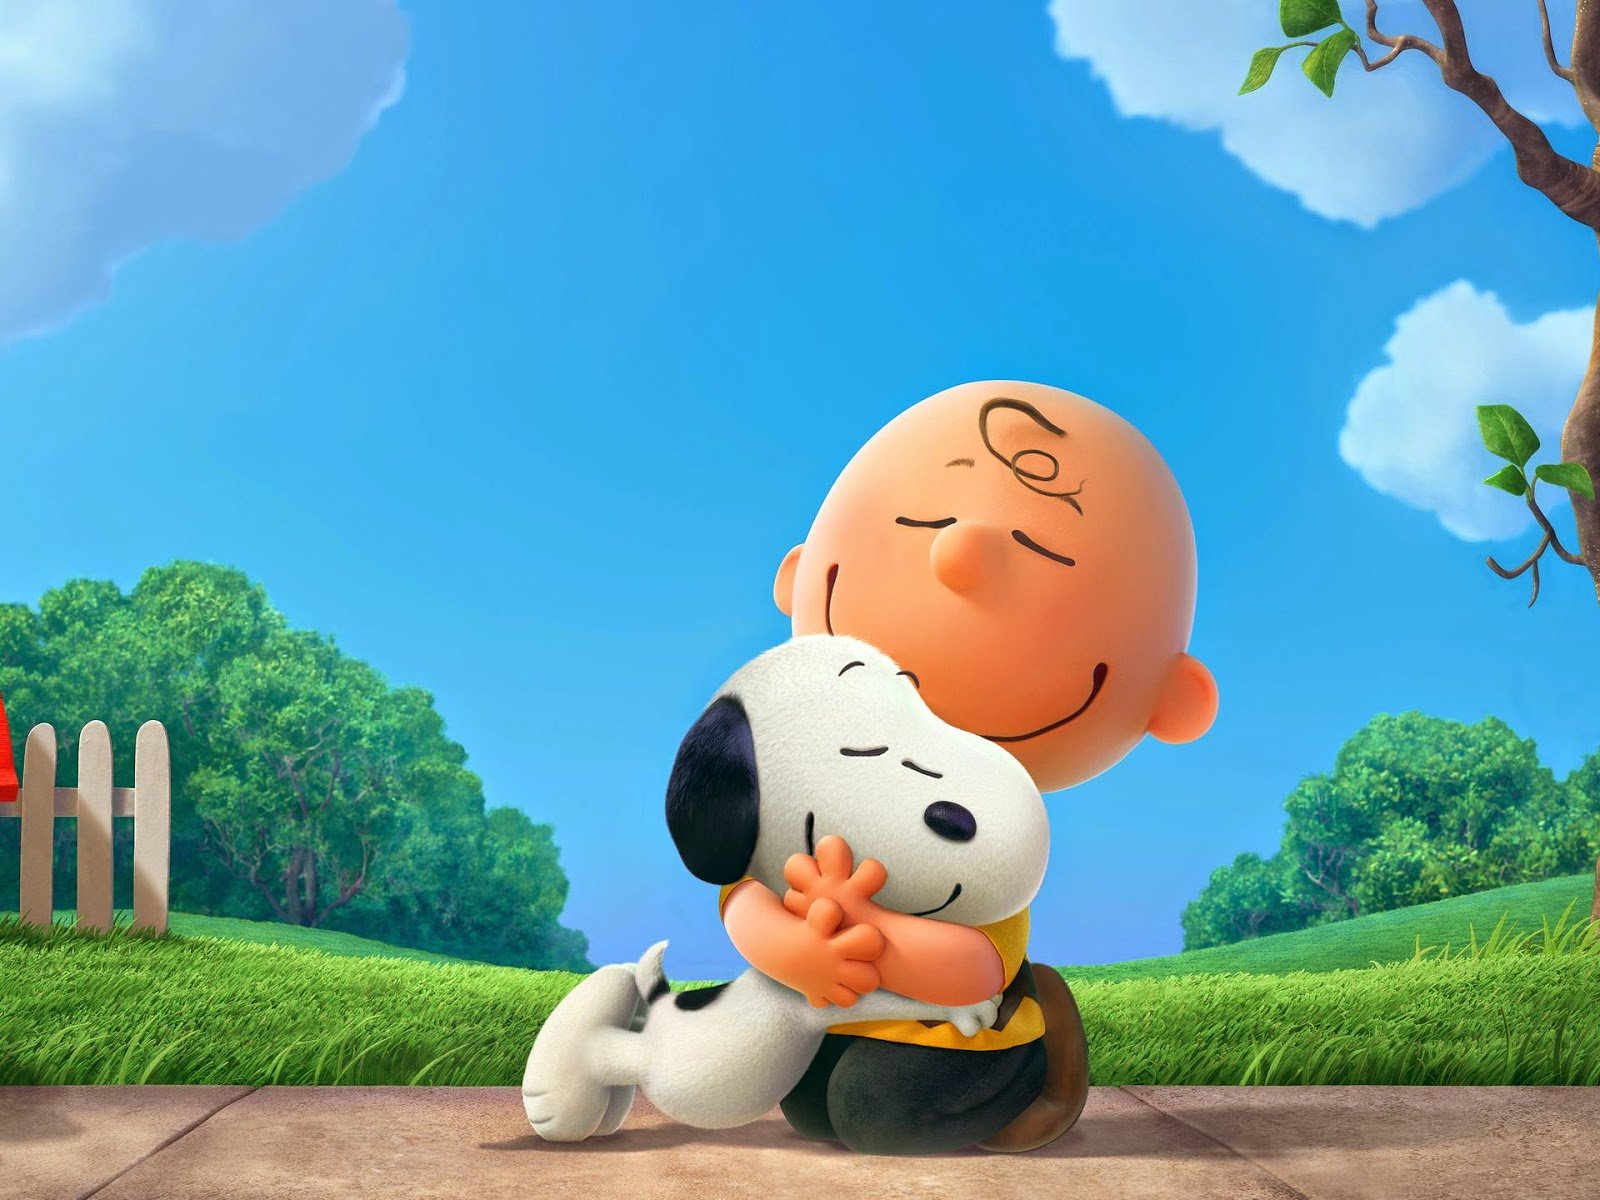 peanuts, Movie, Animation, Family, Snoopy, Comedy, Cgi Wallpaper